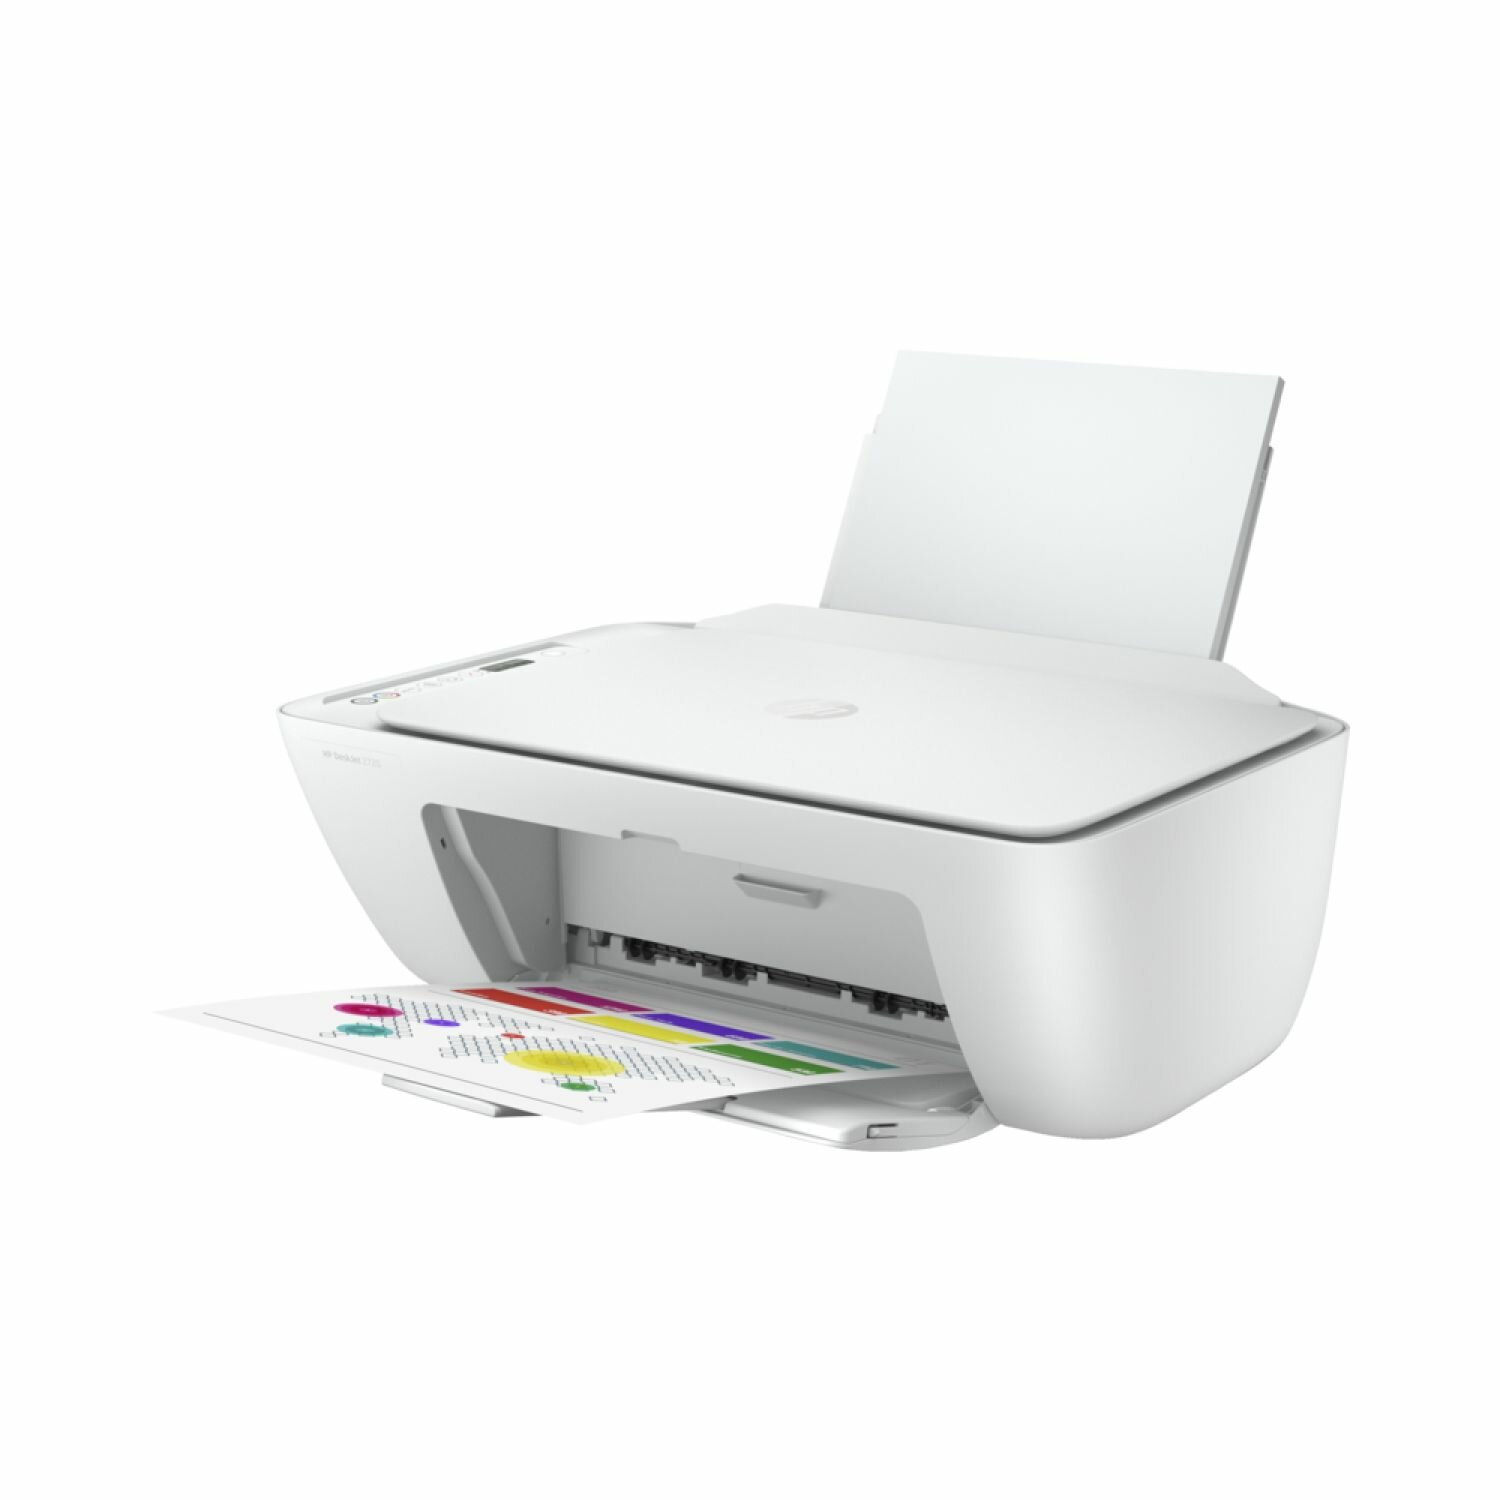 Принтер МФУ струйный цветной HP DeskJet 2720, 3 в 1, Wi-Fi сканер и копир распечатка на бумаге А4, цветная печать 5 стр/мин, черно-белая 7, разрешение для печати 4800x1200 dpi, белый